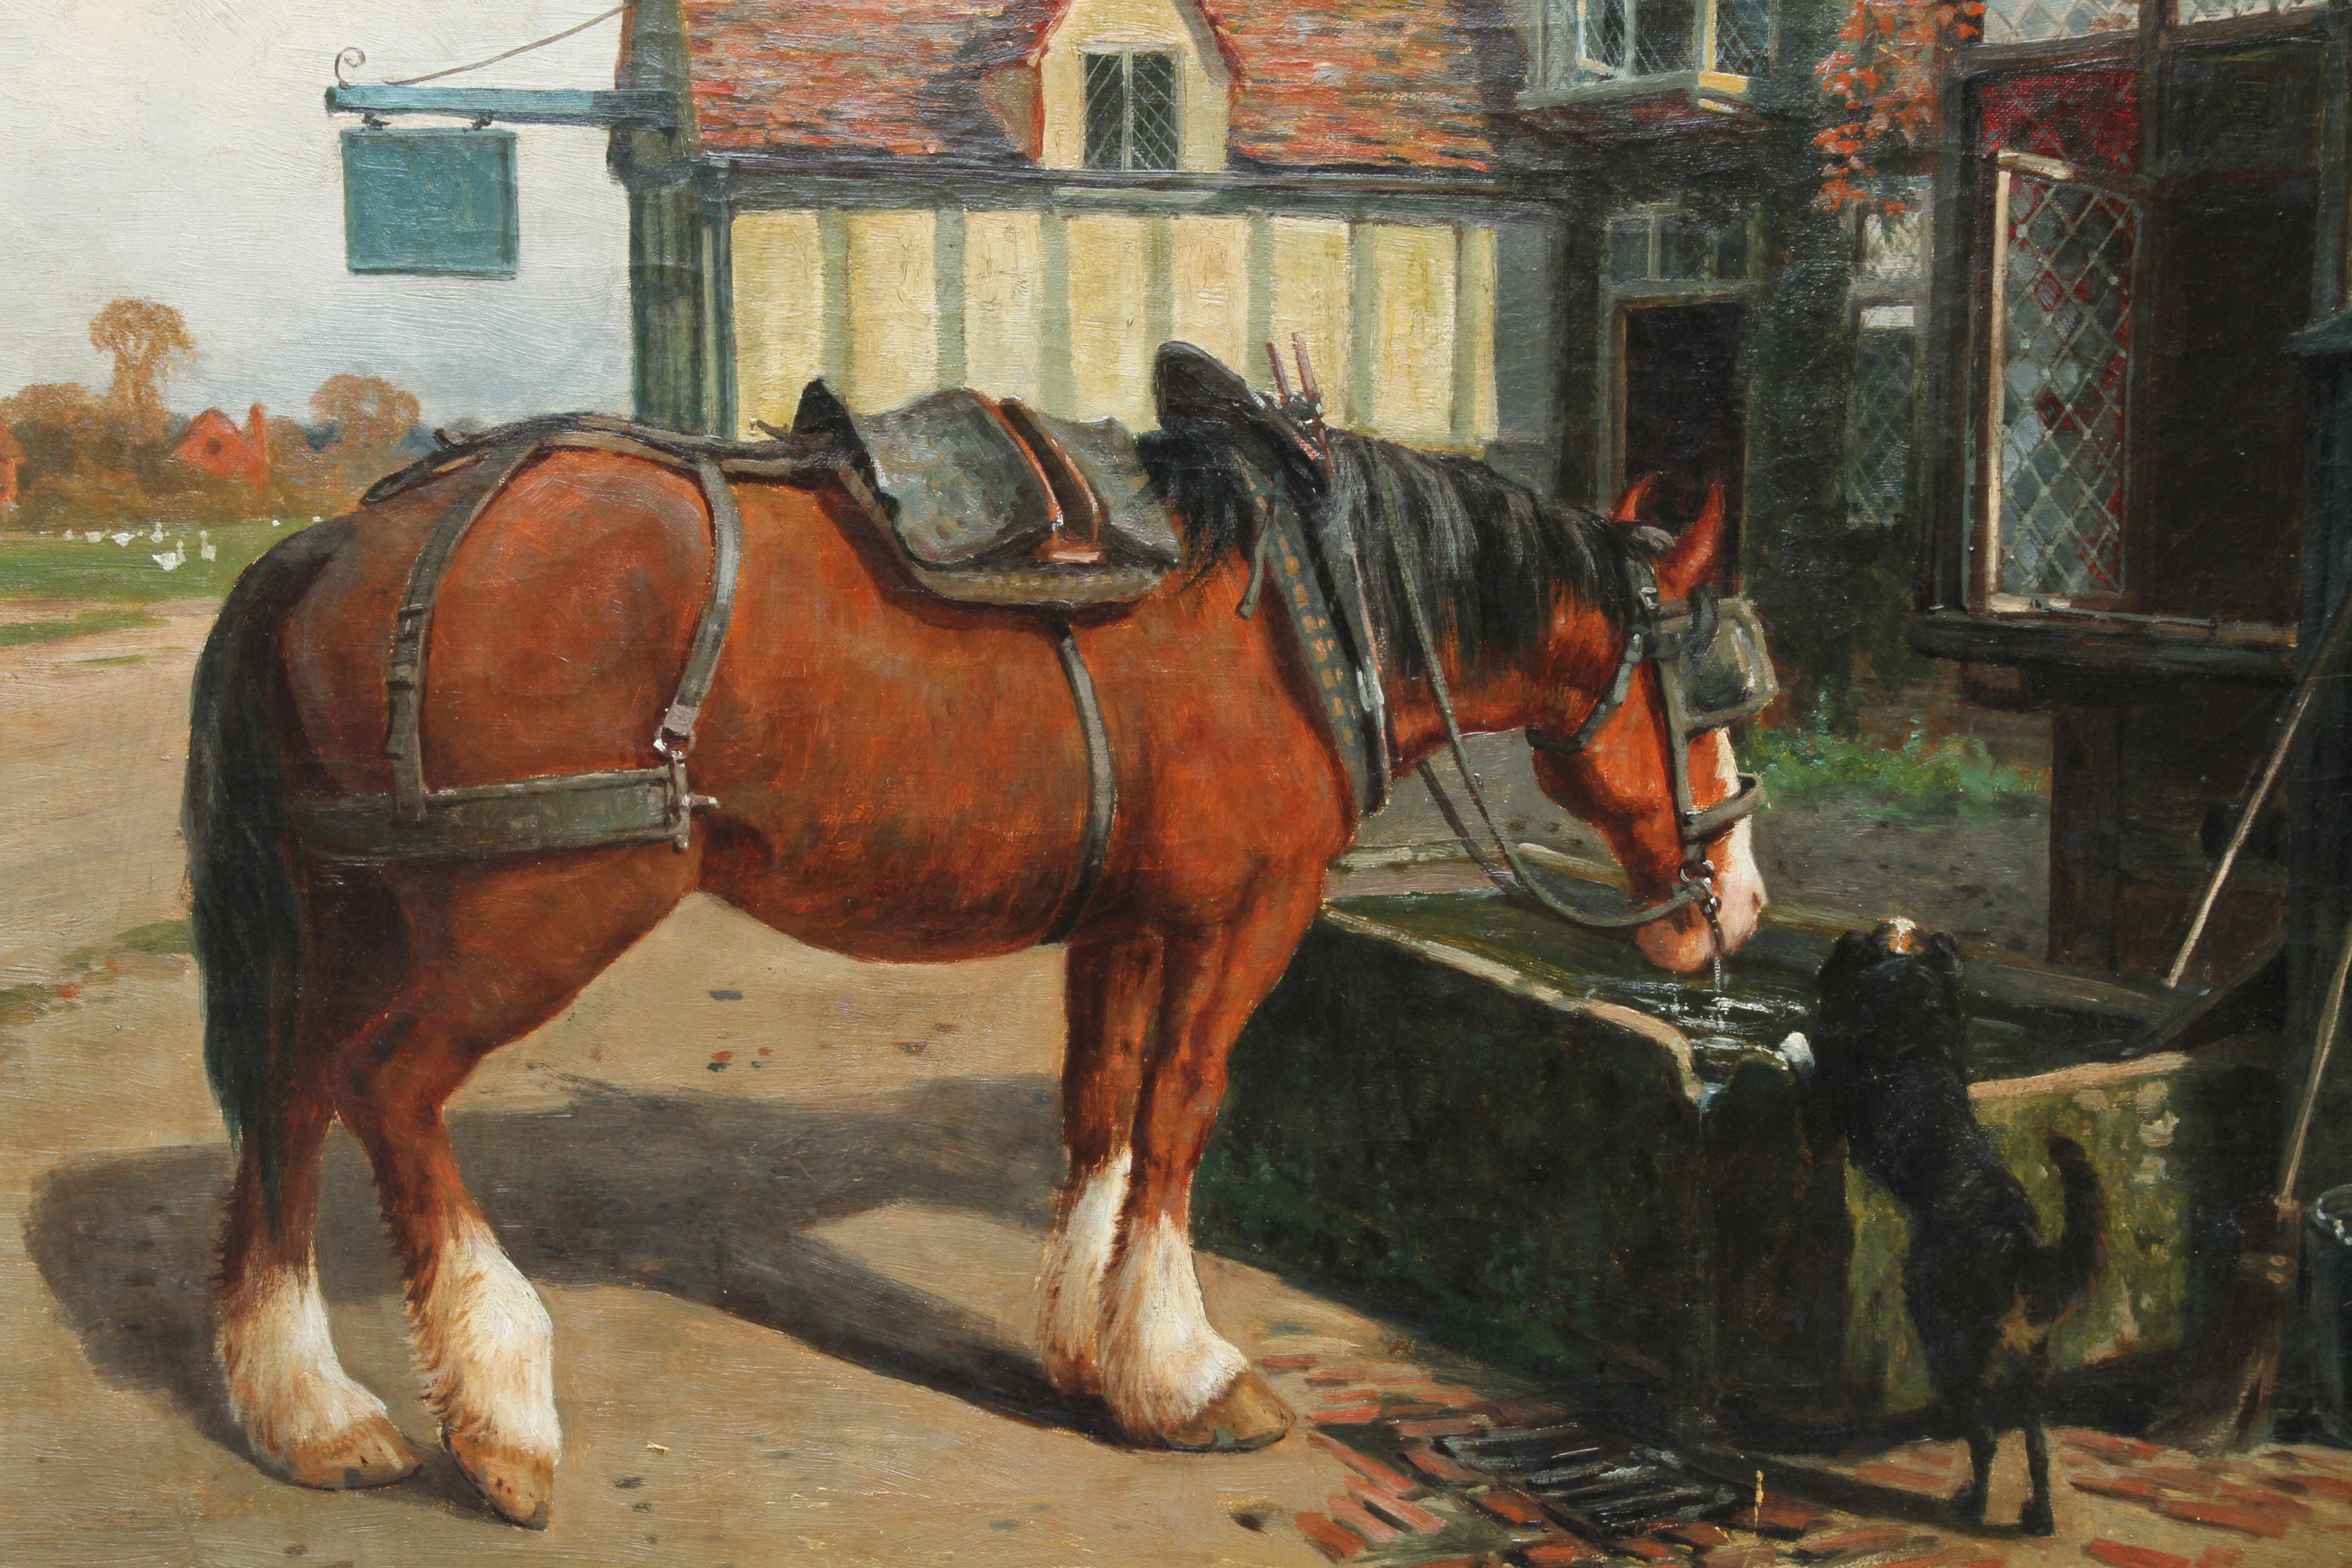 Dieses schöne viktorianische Genre-Ölgemälde stammt von dem bekannten Tiermaler Arthur William Redgate. Die um 1900 gemalte Szene zeigt ein Bauernpferd, das an einer Tränke vor einem Wirtshaus trinkt, während ein Hund zusieht. Der Standort liegt in